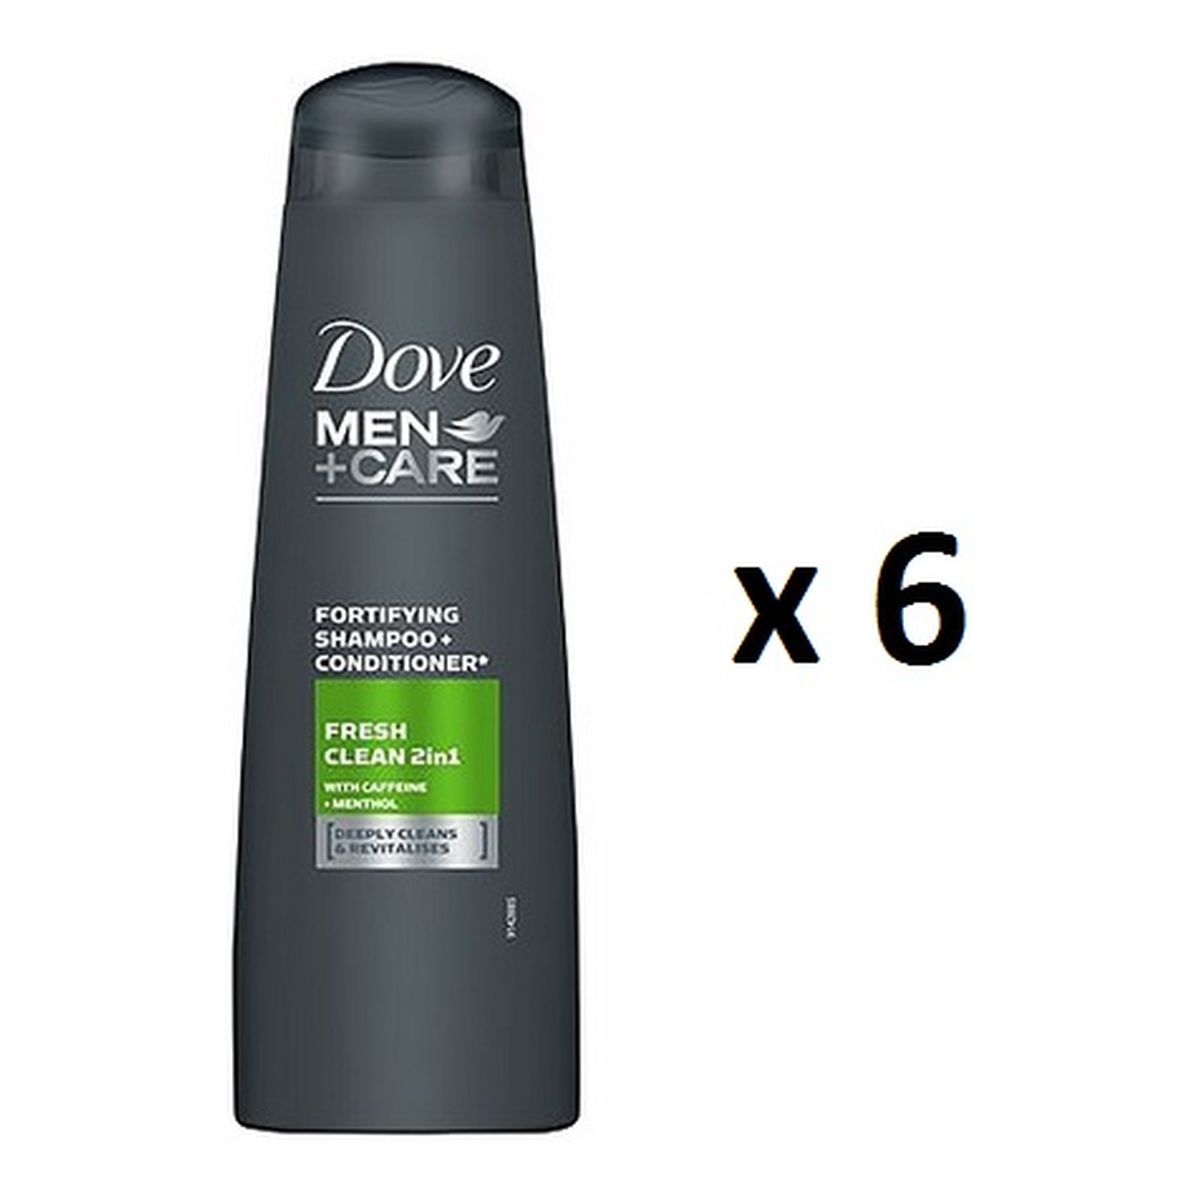 Dove Men+Care Fresh Clean szampon odżywka 2w1 250ml x 6 250ml